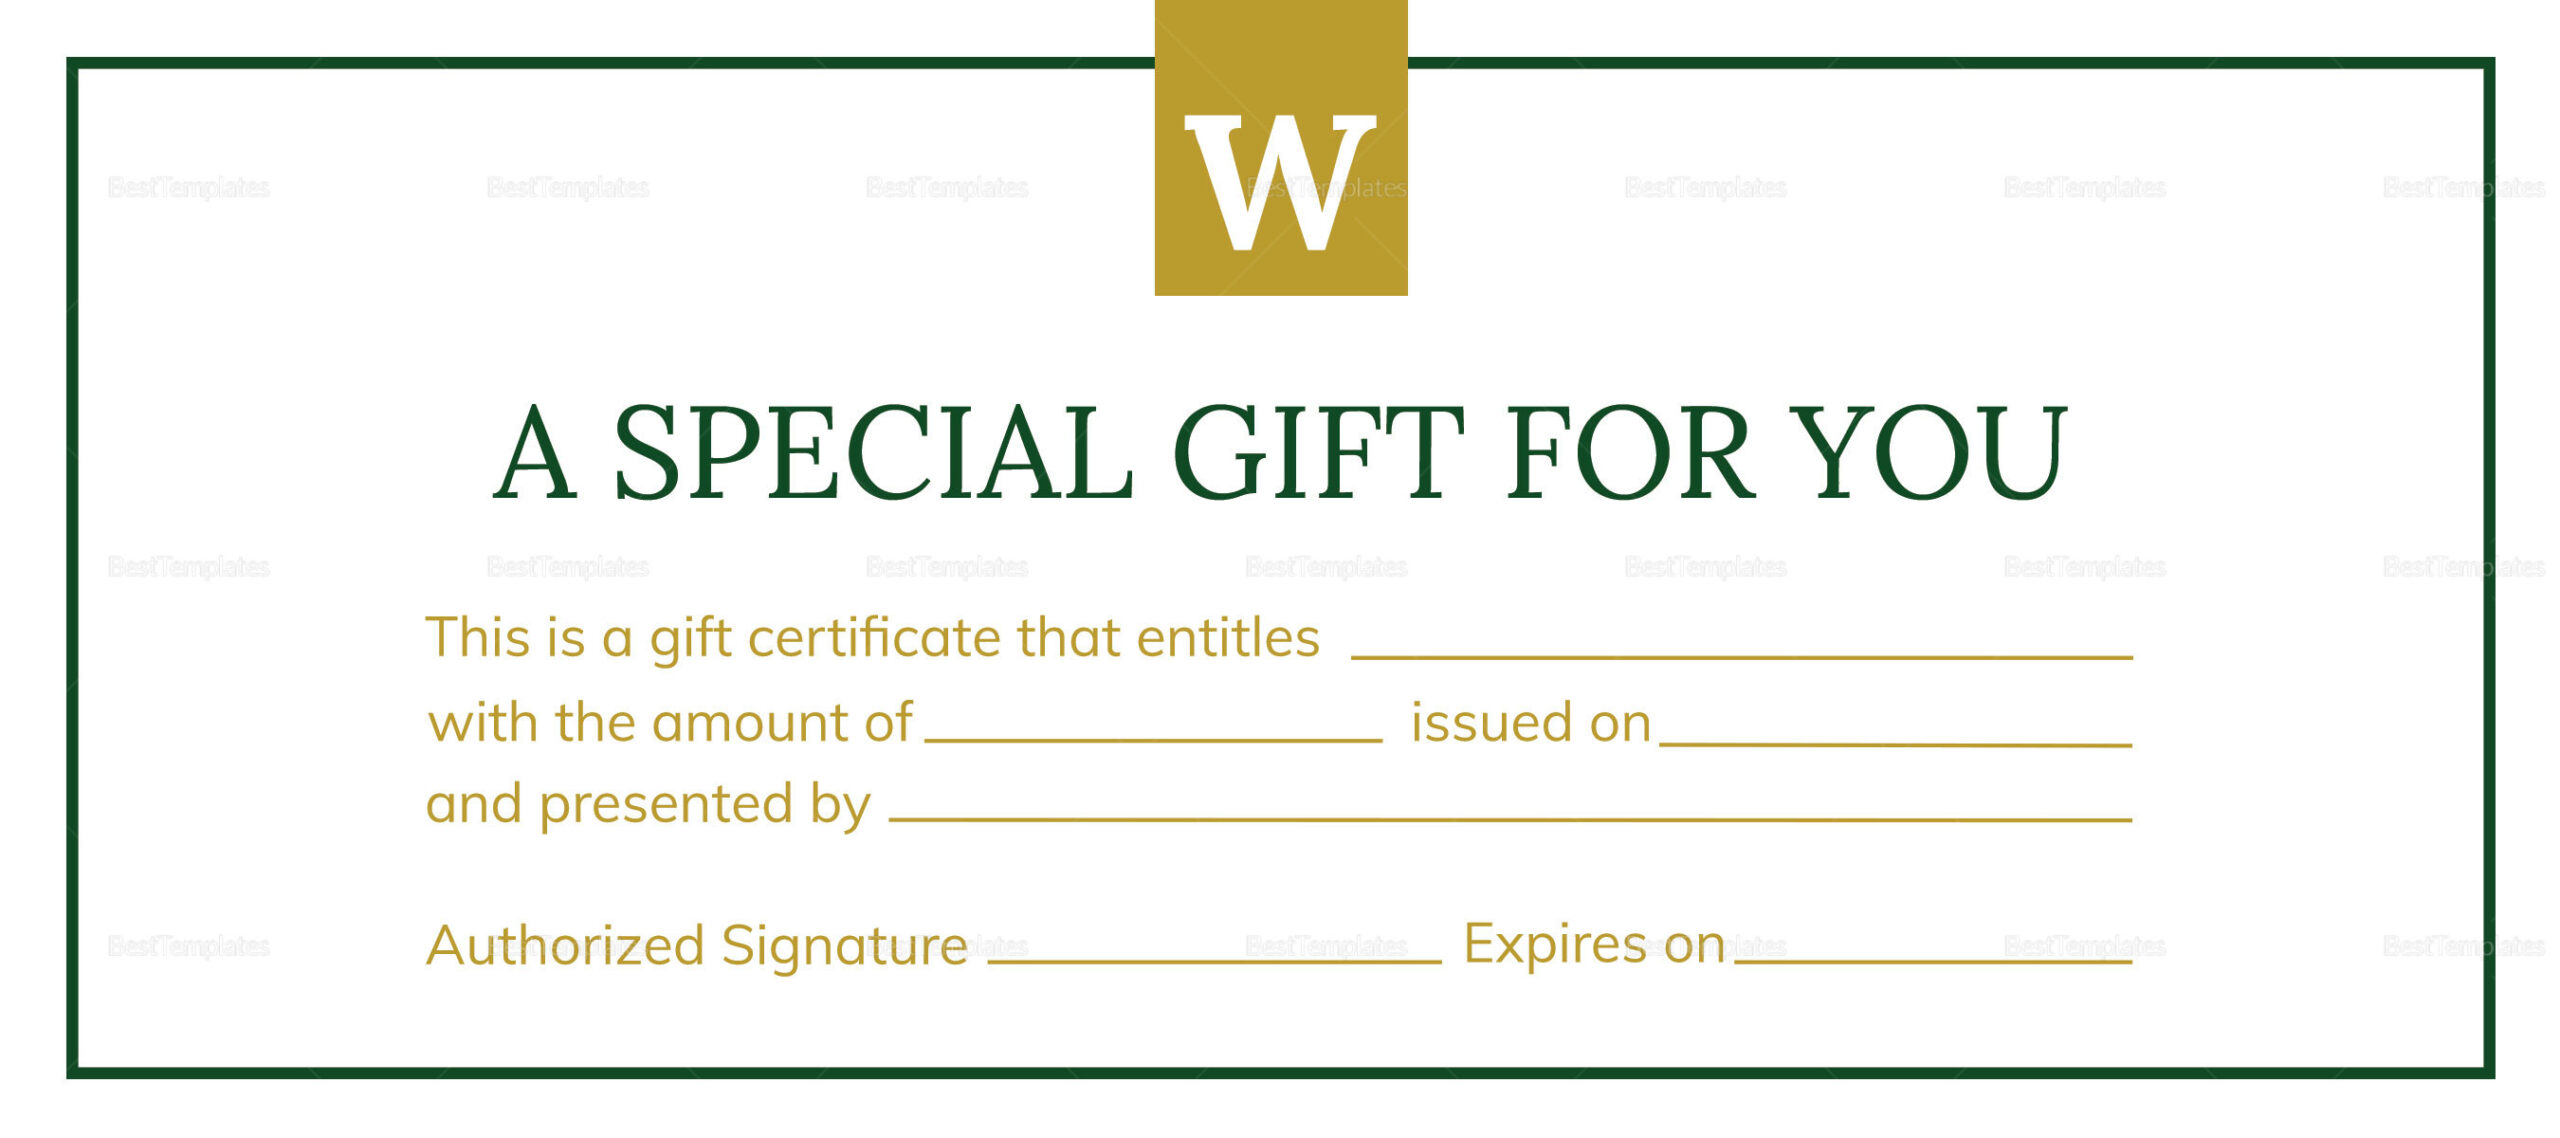 Hotel Gift Certificate Design Template in PSD, Word, Publisher  For Gift Certificate Template Indesign